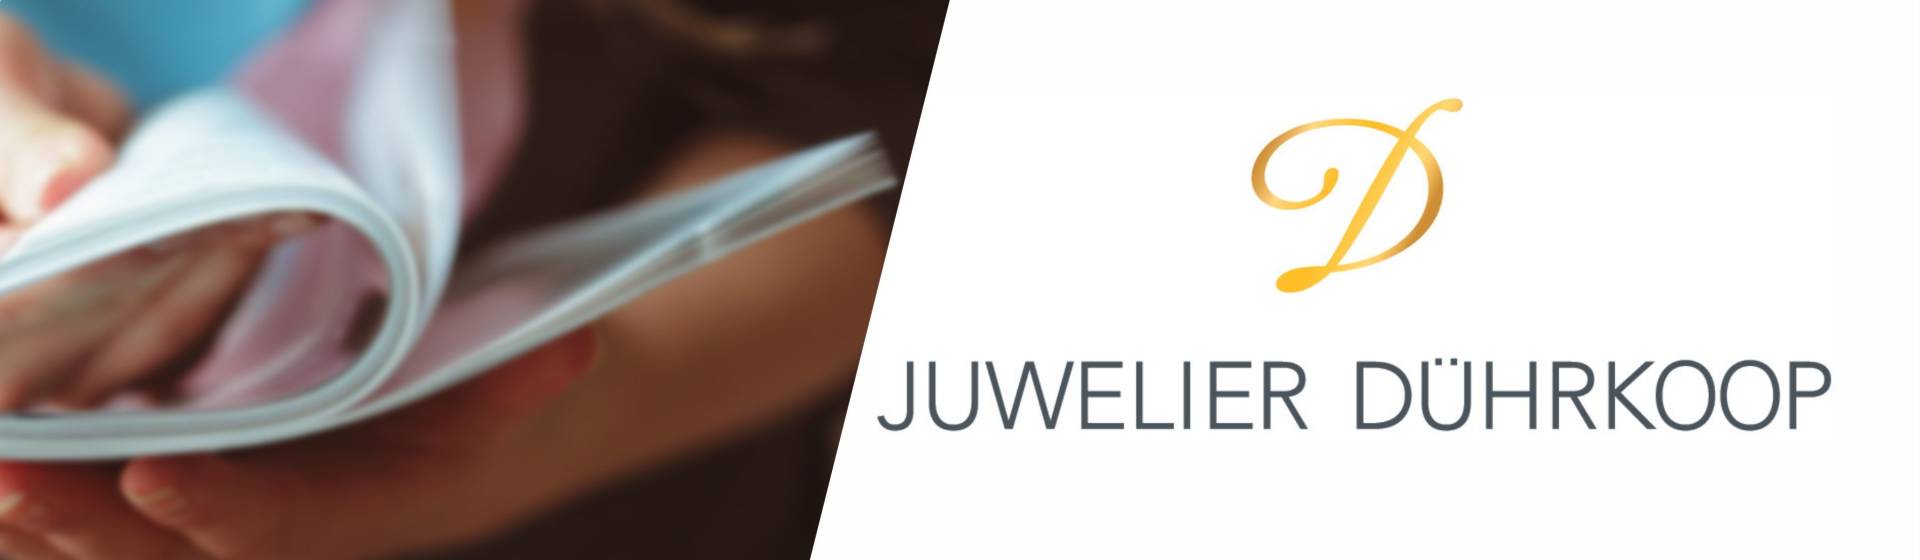 JuwelierDührkoop News Slider 3840x1120px